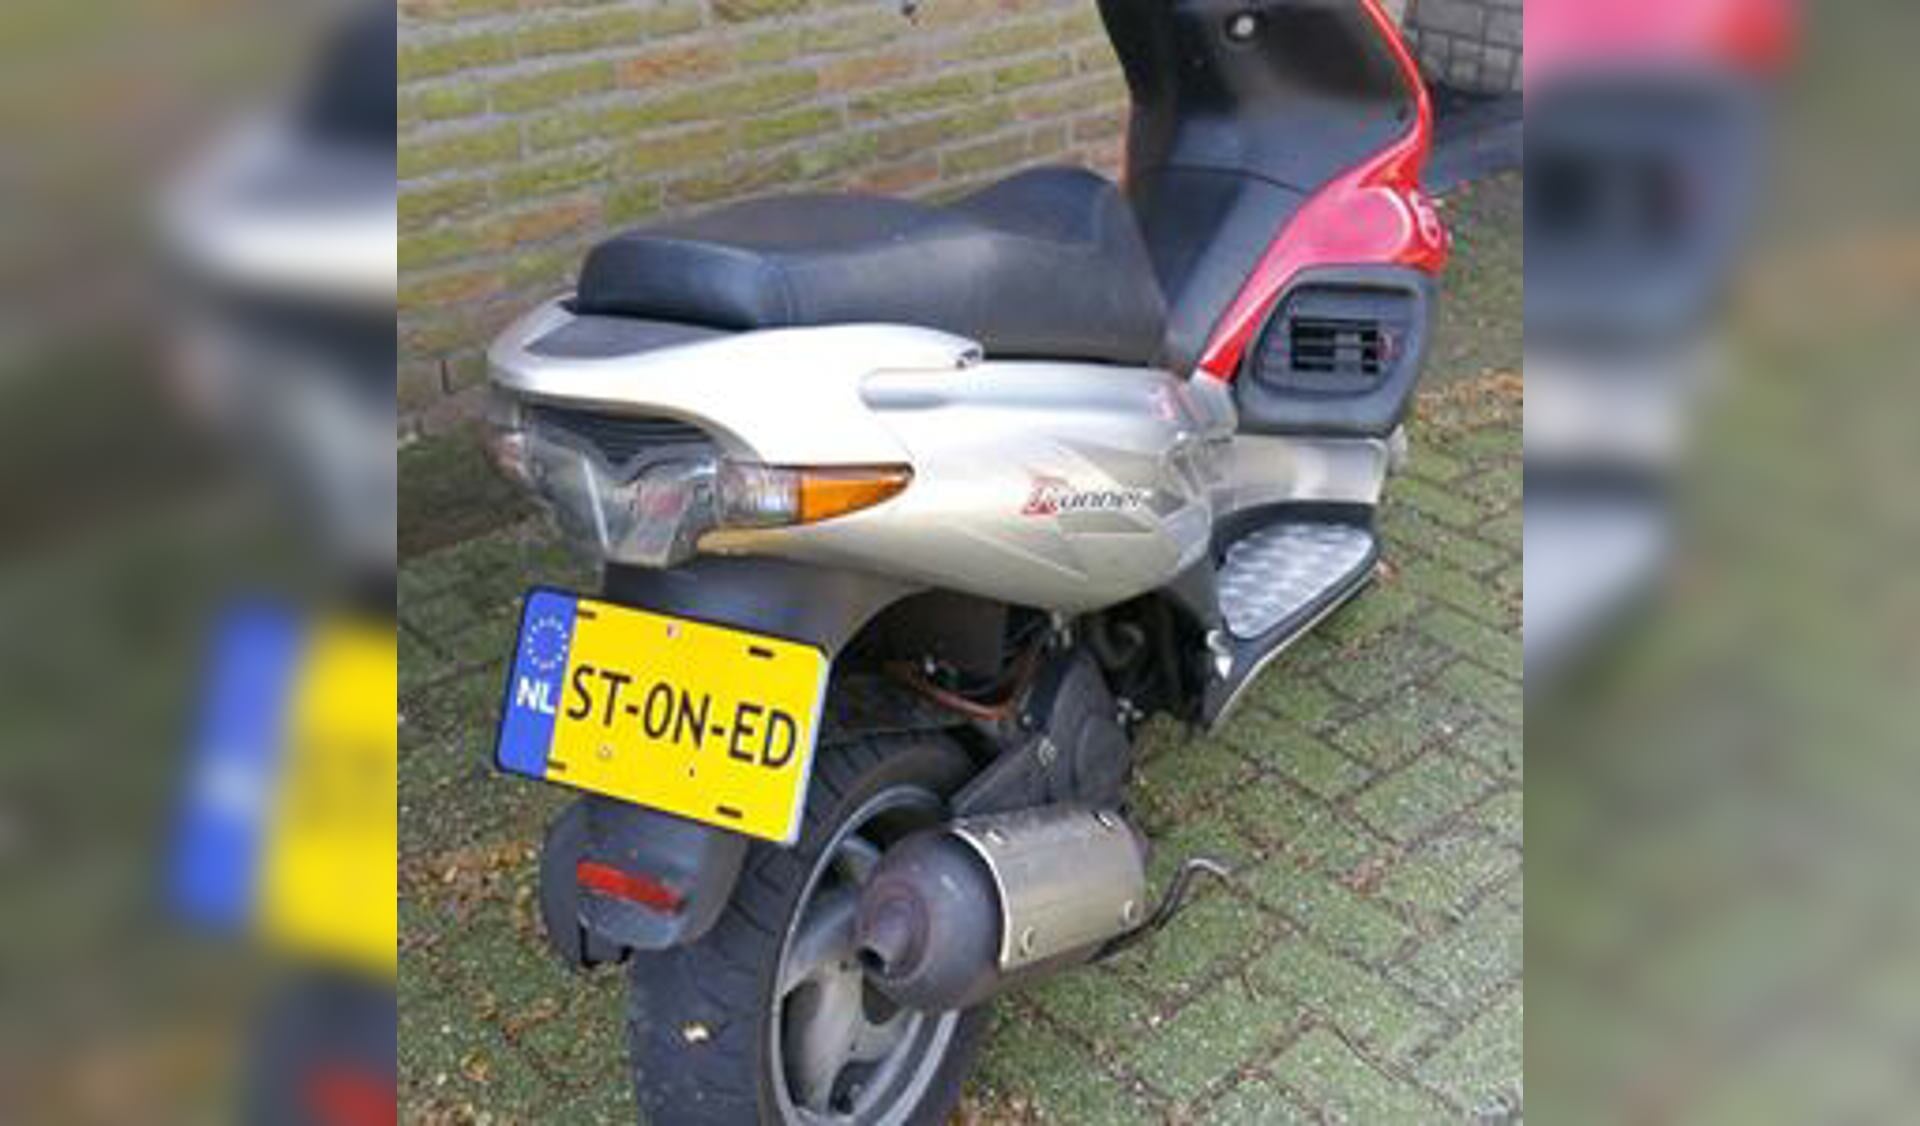 De scooter met de bijzondere kentekenplaat. Foto: Facebook politie Venray-Gennep.